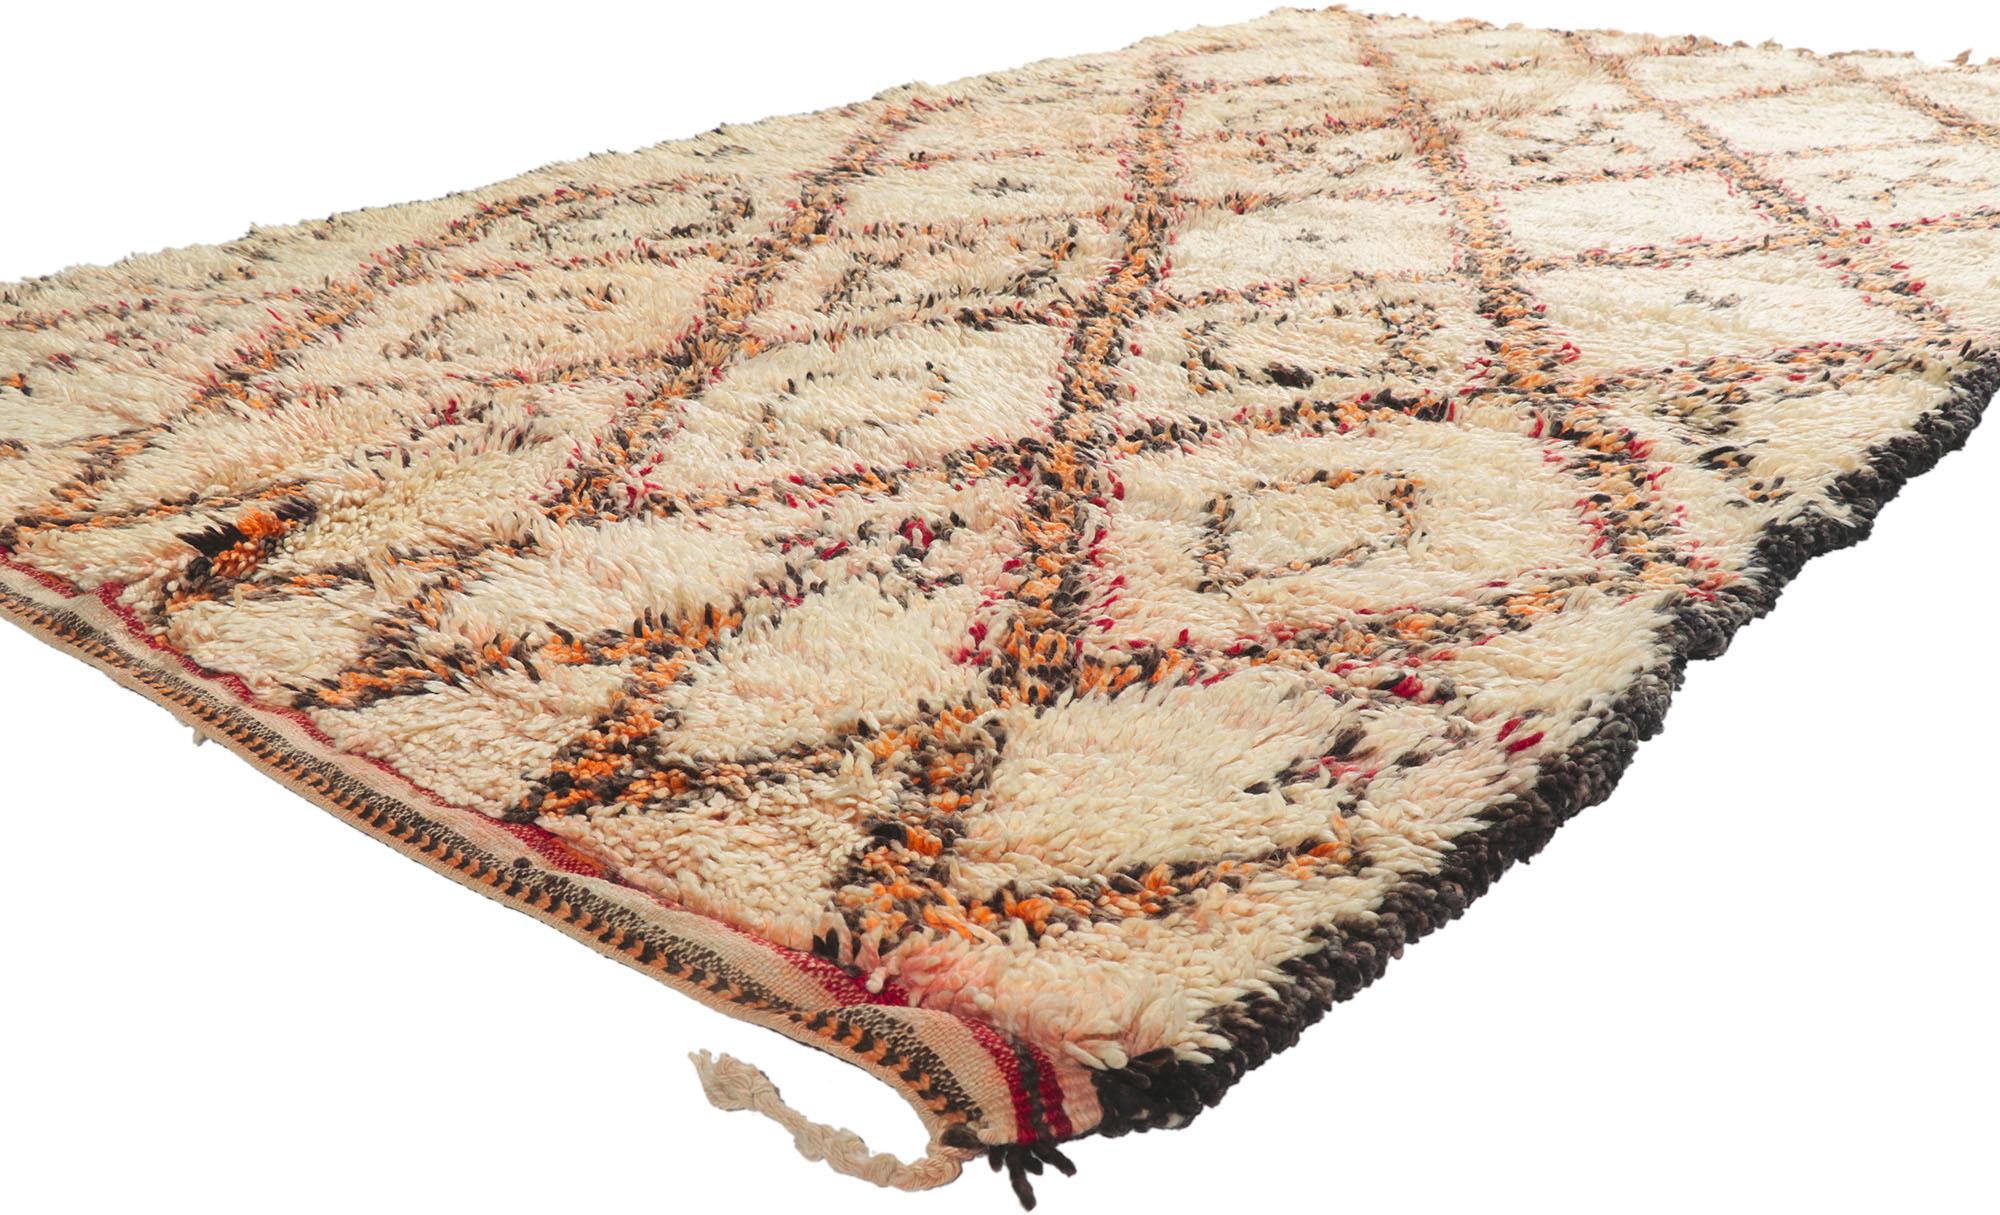 21417 Vintage Berber Moroccan Beni Ourain Rug 06'01 x 10'08. Avec sa simplicité, ses poils en peluche et son style tribal, ce tapis berbère vintage Beni Ourain en laine nouée à la main est une vision captivante de la beauté tissée. Il présente un